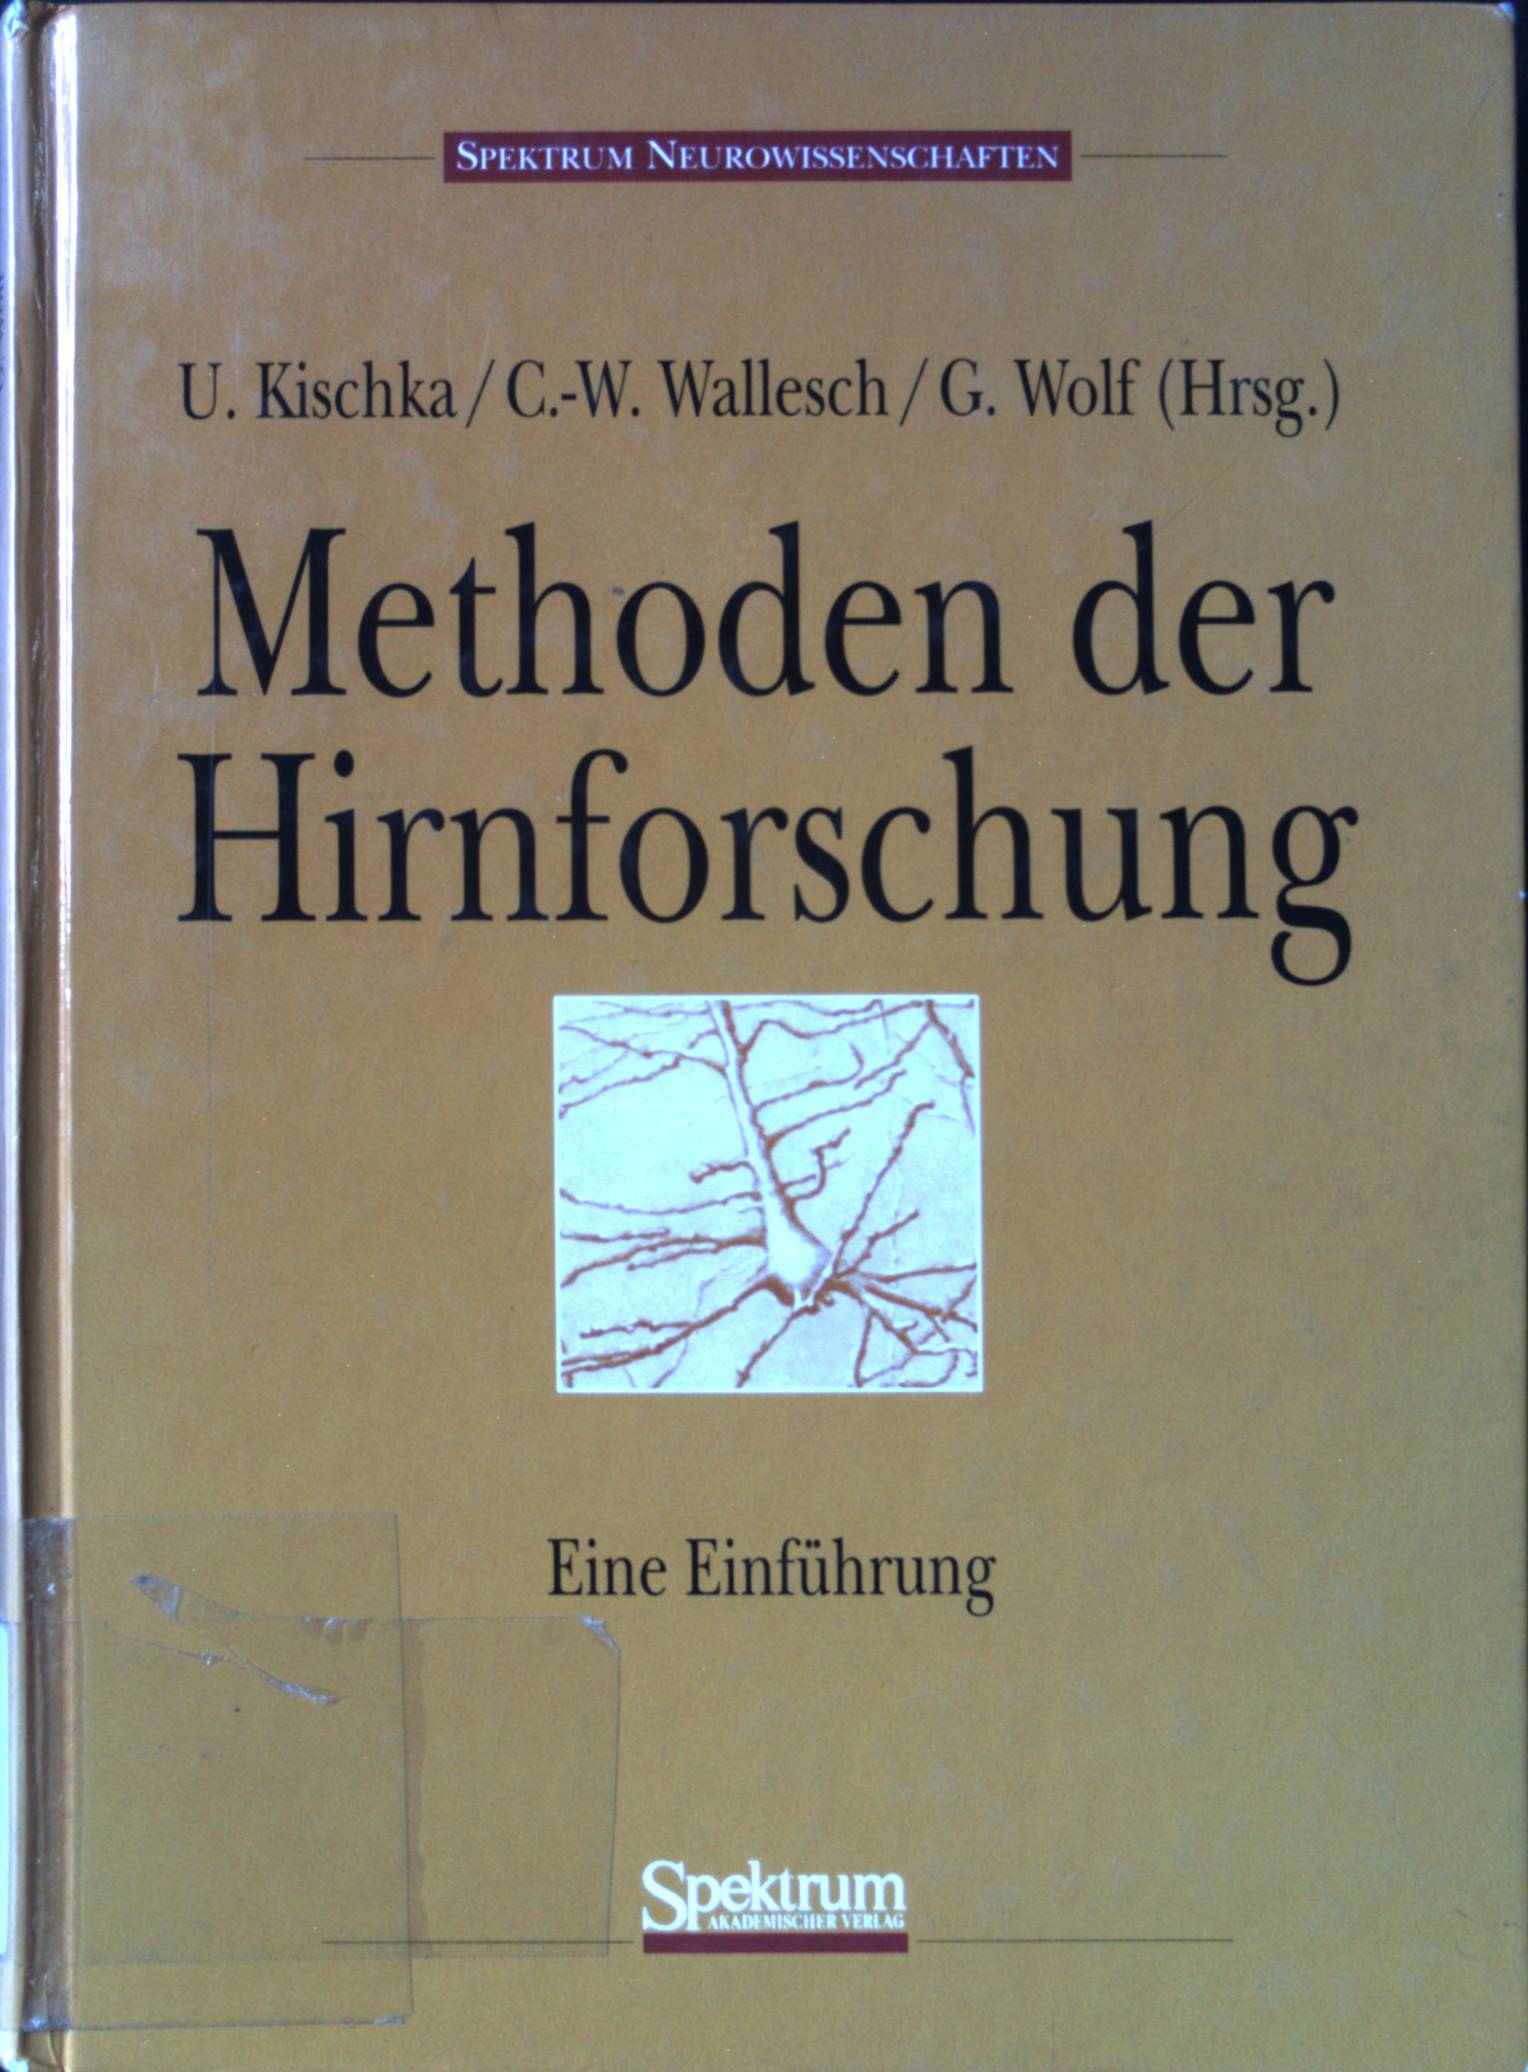 Methoden der Hirnforschung: Eine Einführung. - Kischka, Udo, C. - W. Wallesch und G. Wolf